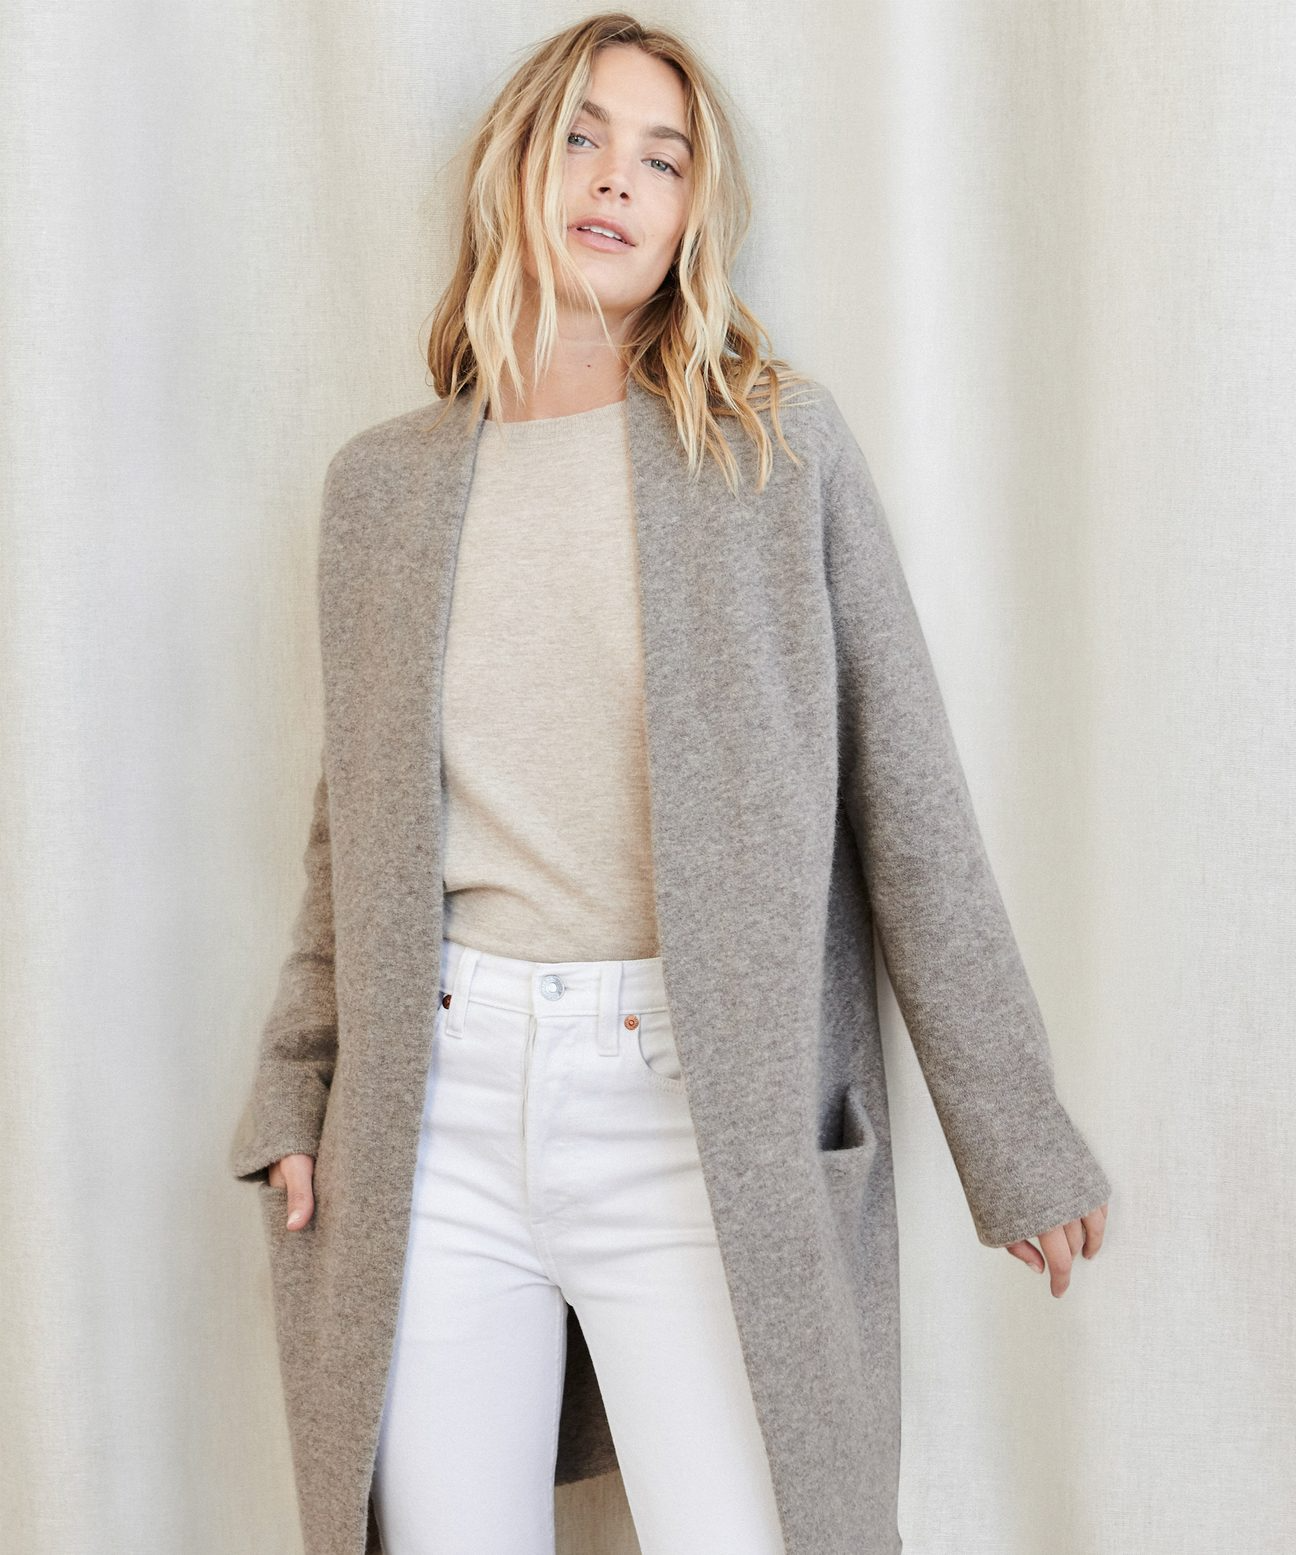 Jenni Kayne + Sweater Coat